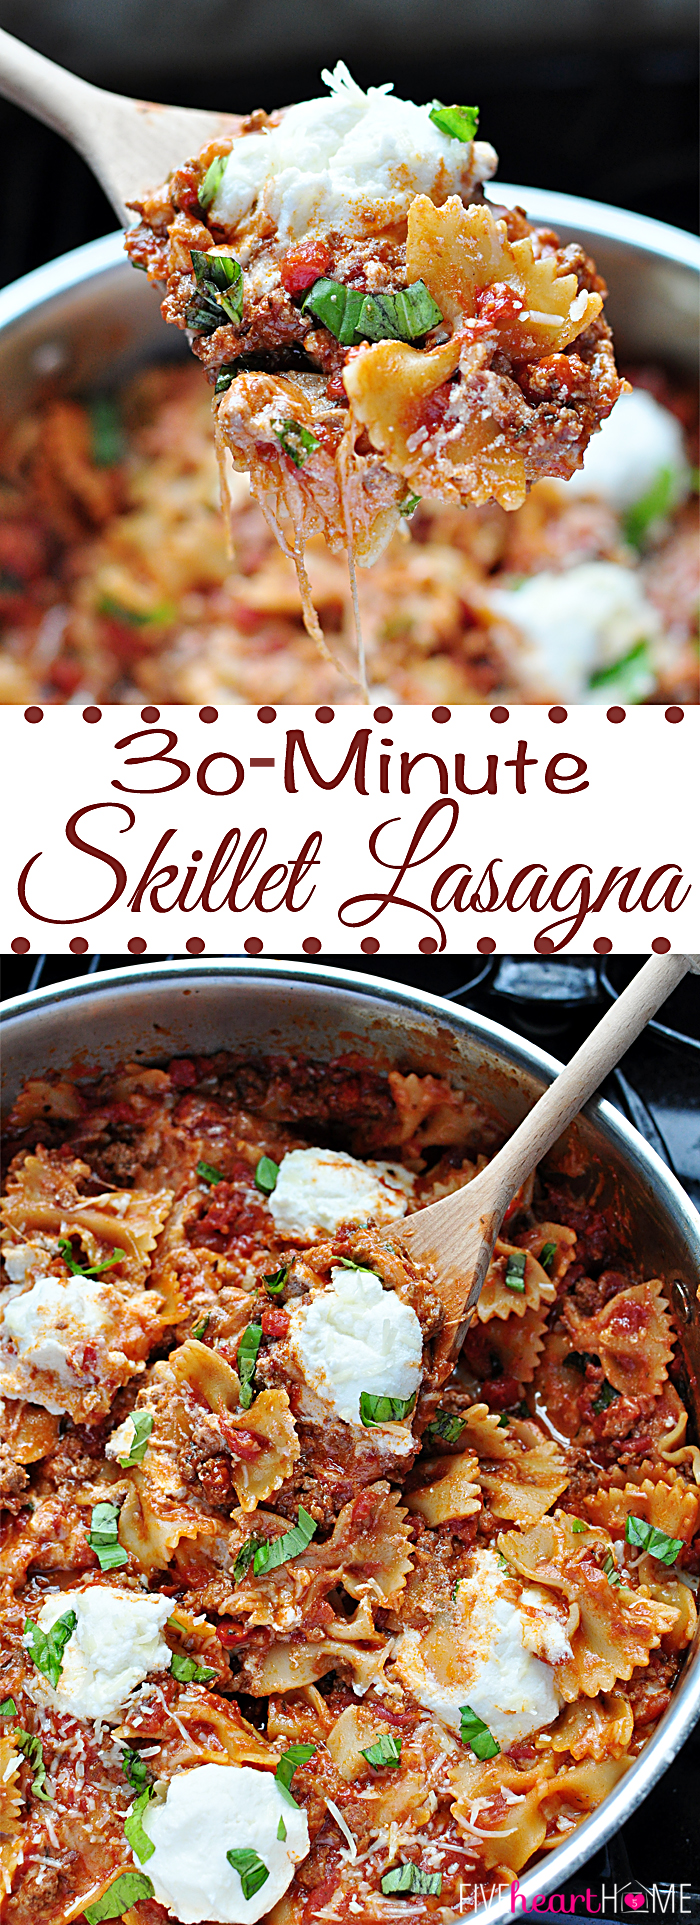 30 Minutes Skillet Lasagna